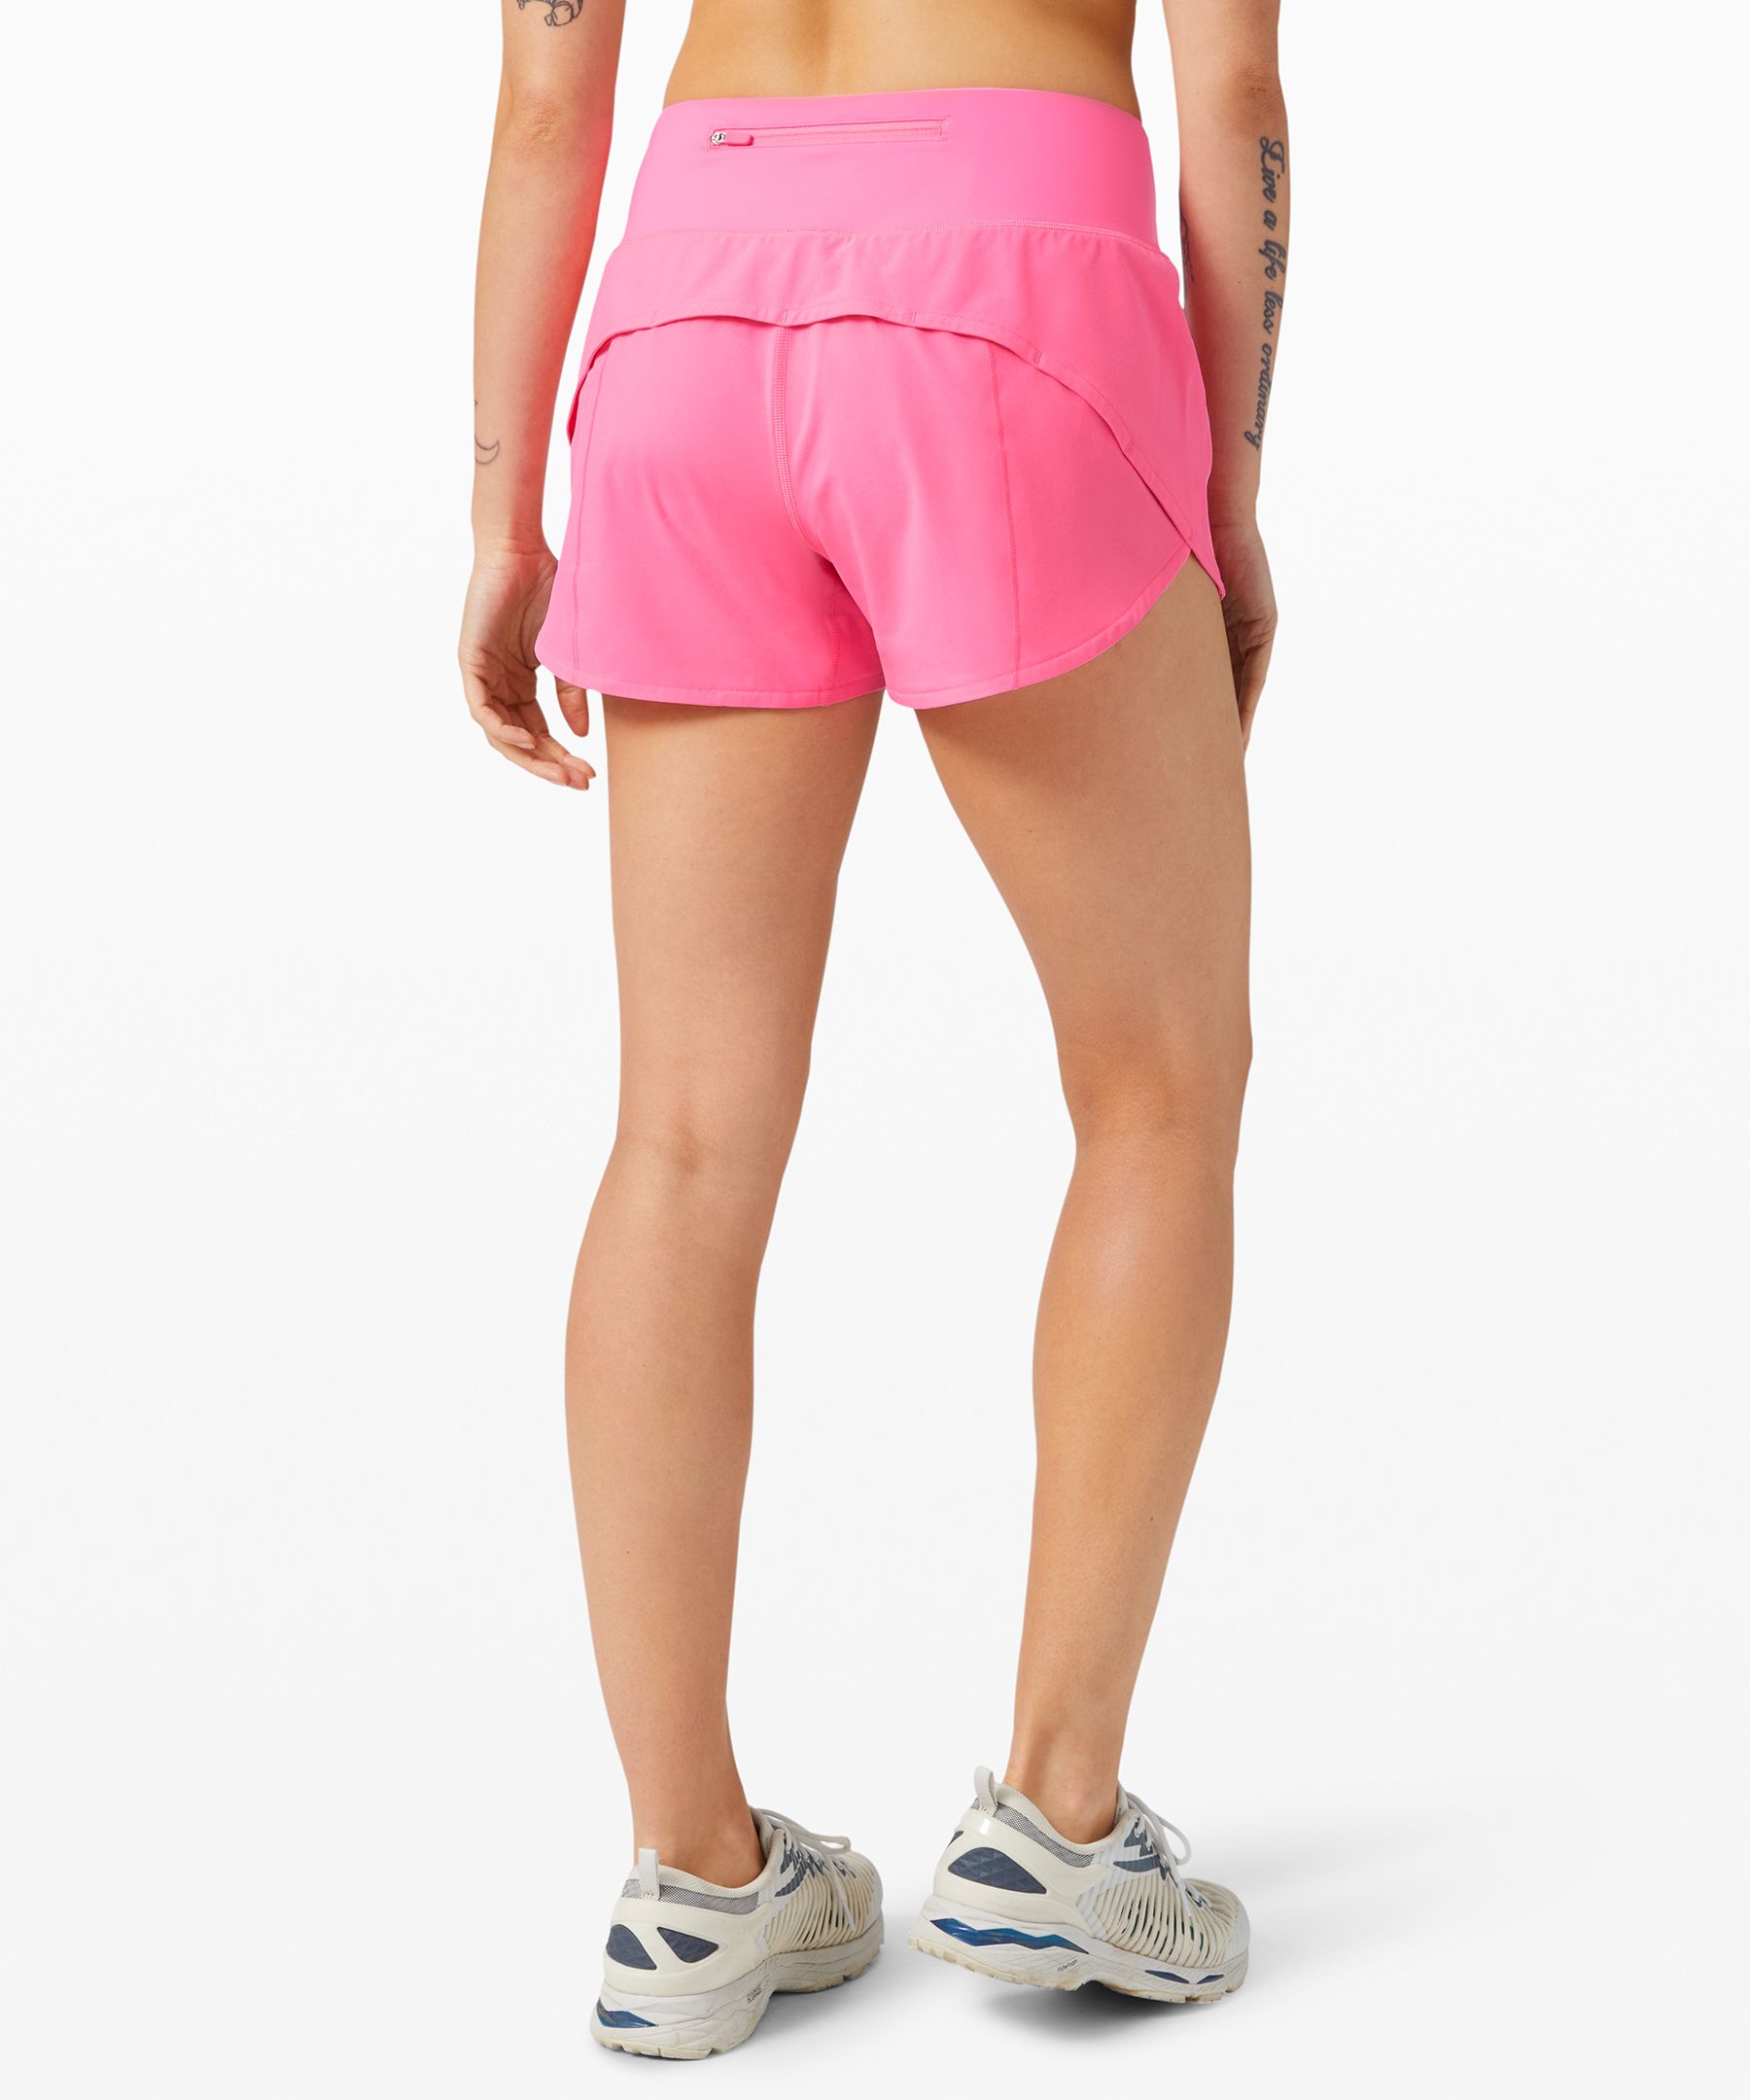 baby pink lululemon shorts